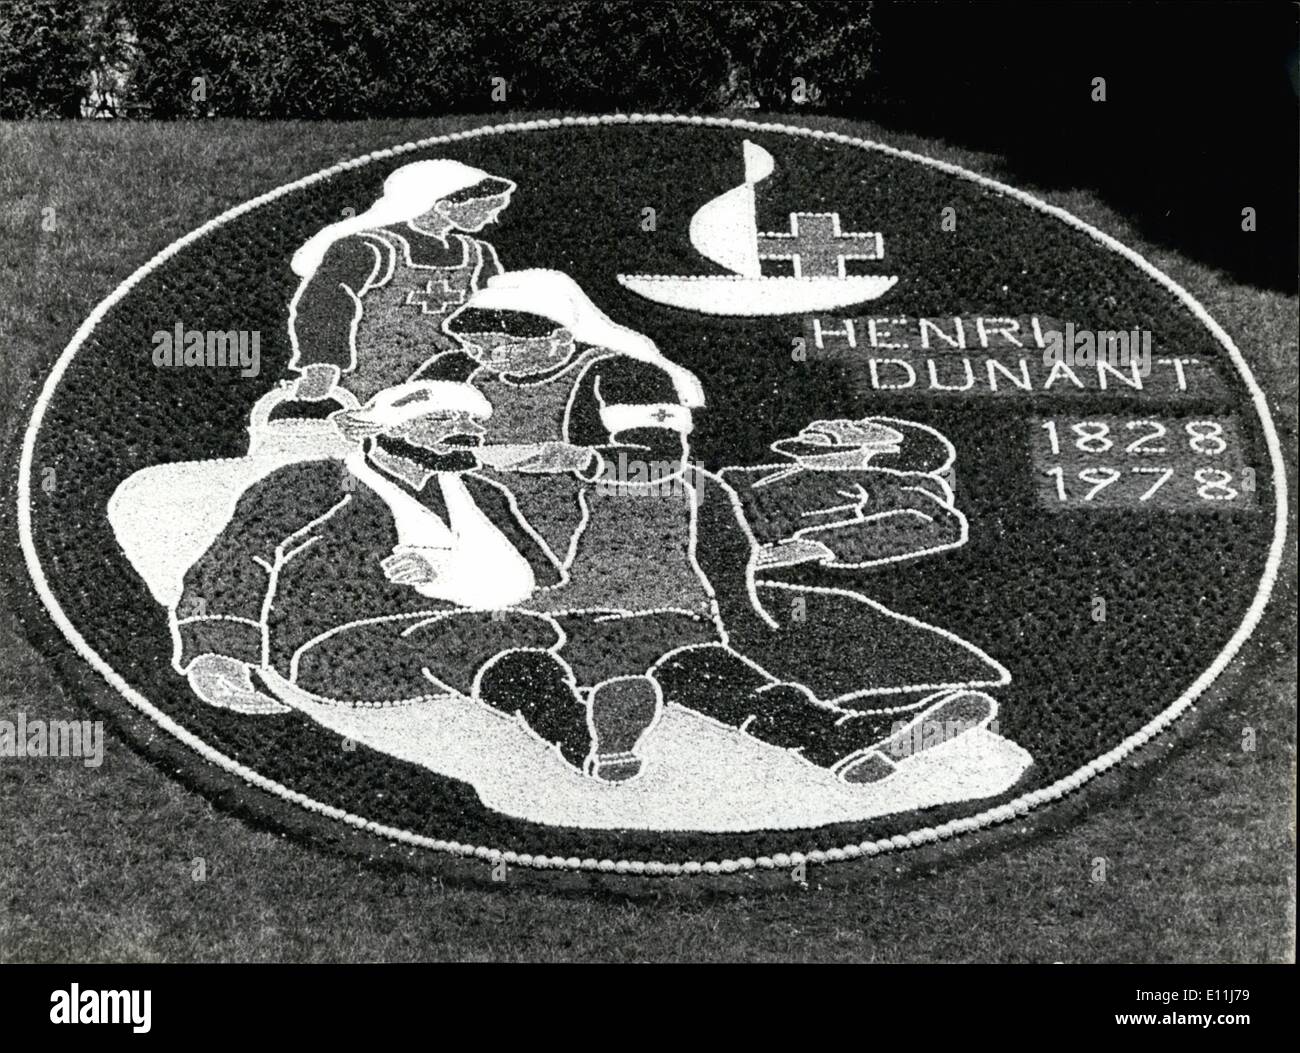 Lug. 07, 1978 - Foto di fiori in onore della Croce Rossa fondatore Henri Dunant: quest'anno al amante del mondo viene celebrato il centesimo compleanno di Henri Dunant, il fondatore della Croce Rossa e cittadino di Ginevra. Vicino al lago di Ginevra nella città svizzera di Nyon quest'anno la tradizionale immagine di fiori è stato creato come un hororation di Dunant. Foto Stock